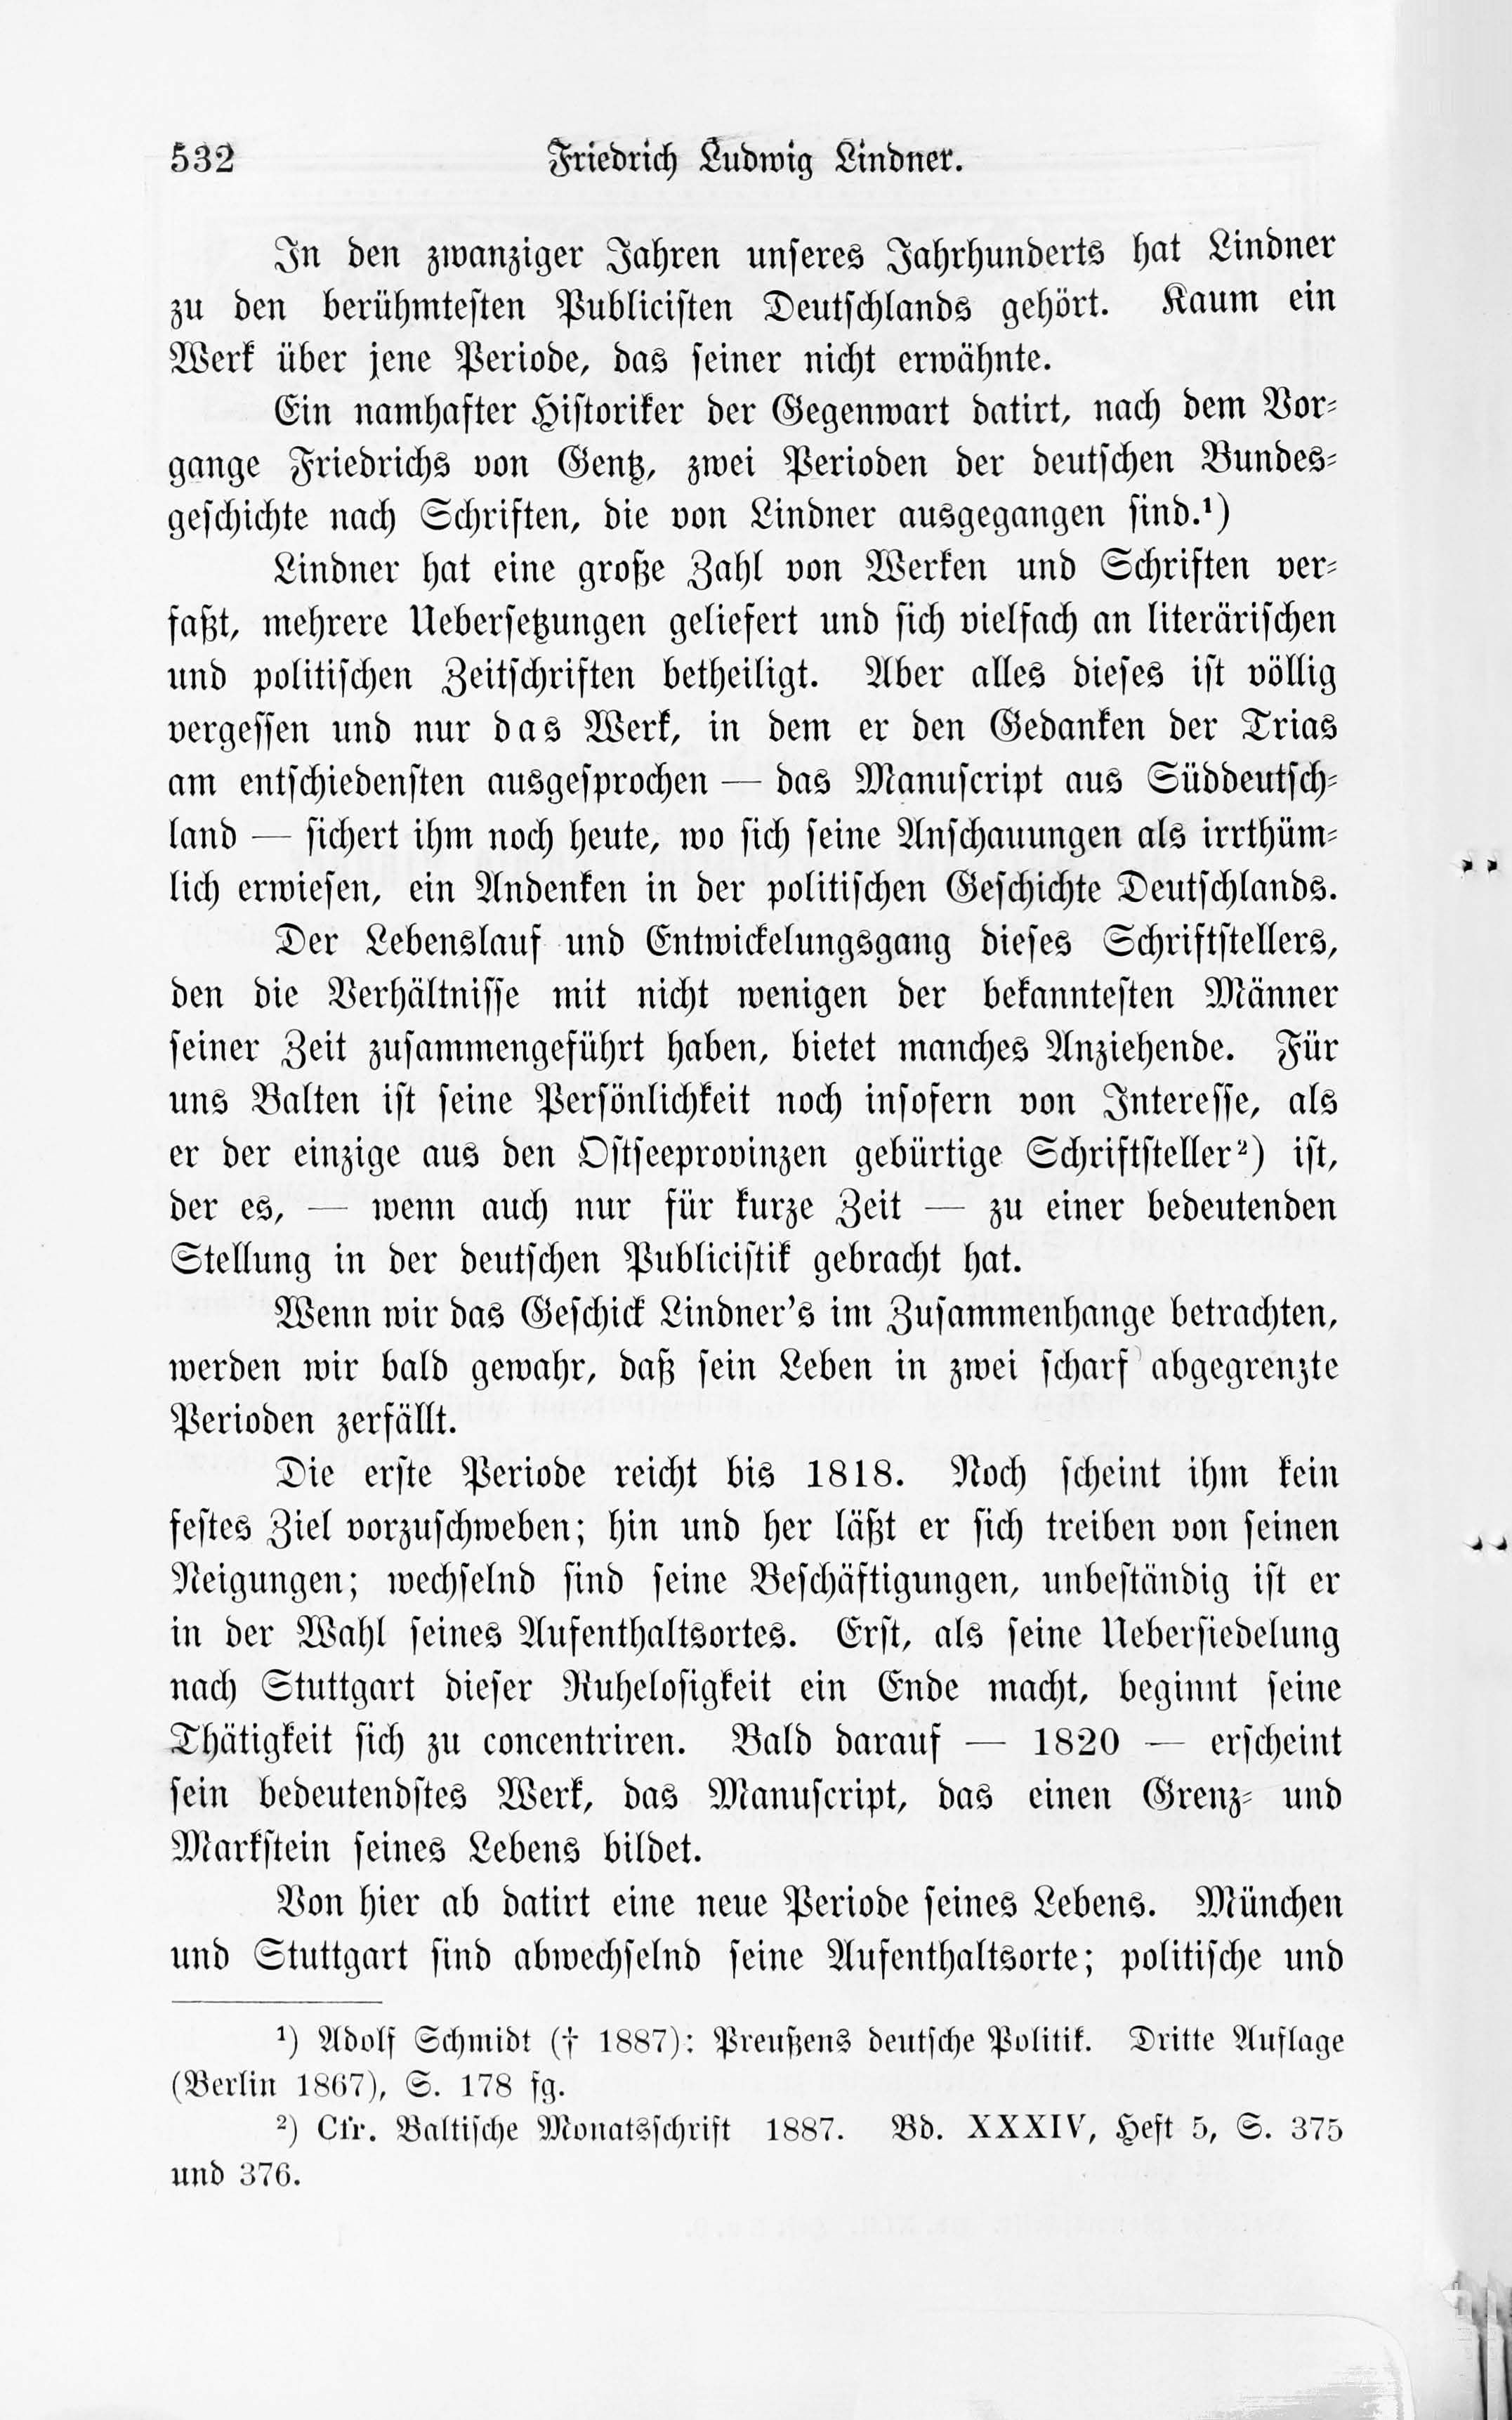 Leben und Schriften des Kurländers Friedrich Ludwig Lindner [1] (1895) | 2. Main body of text